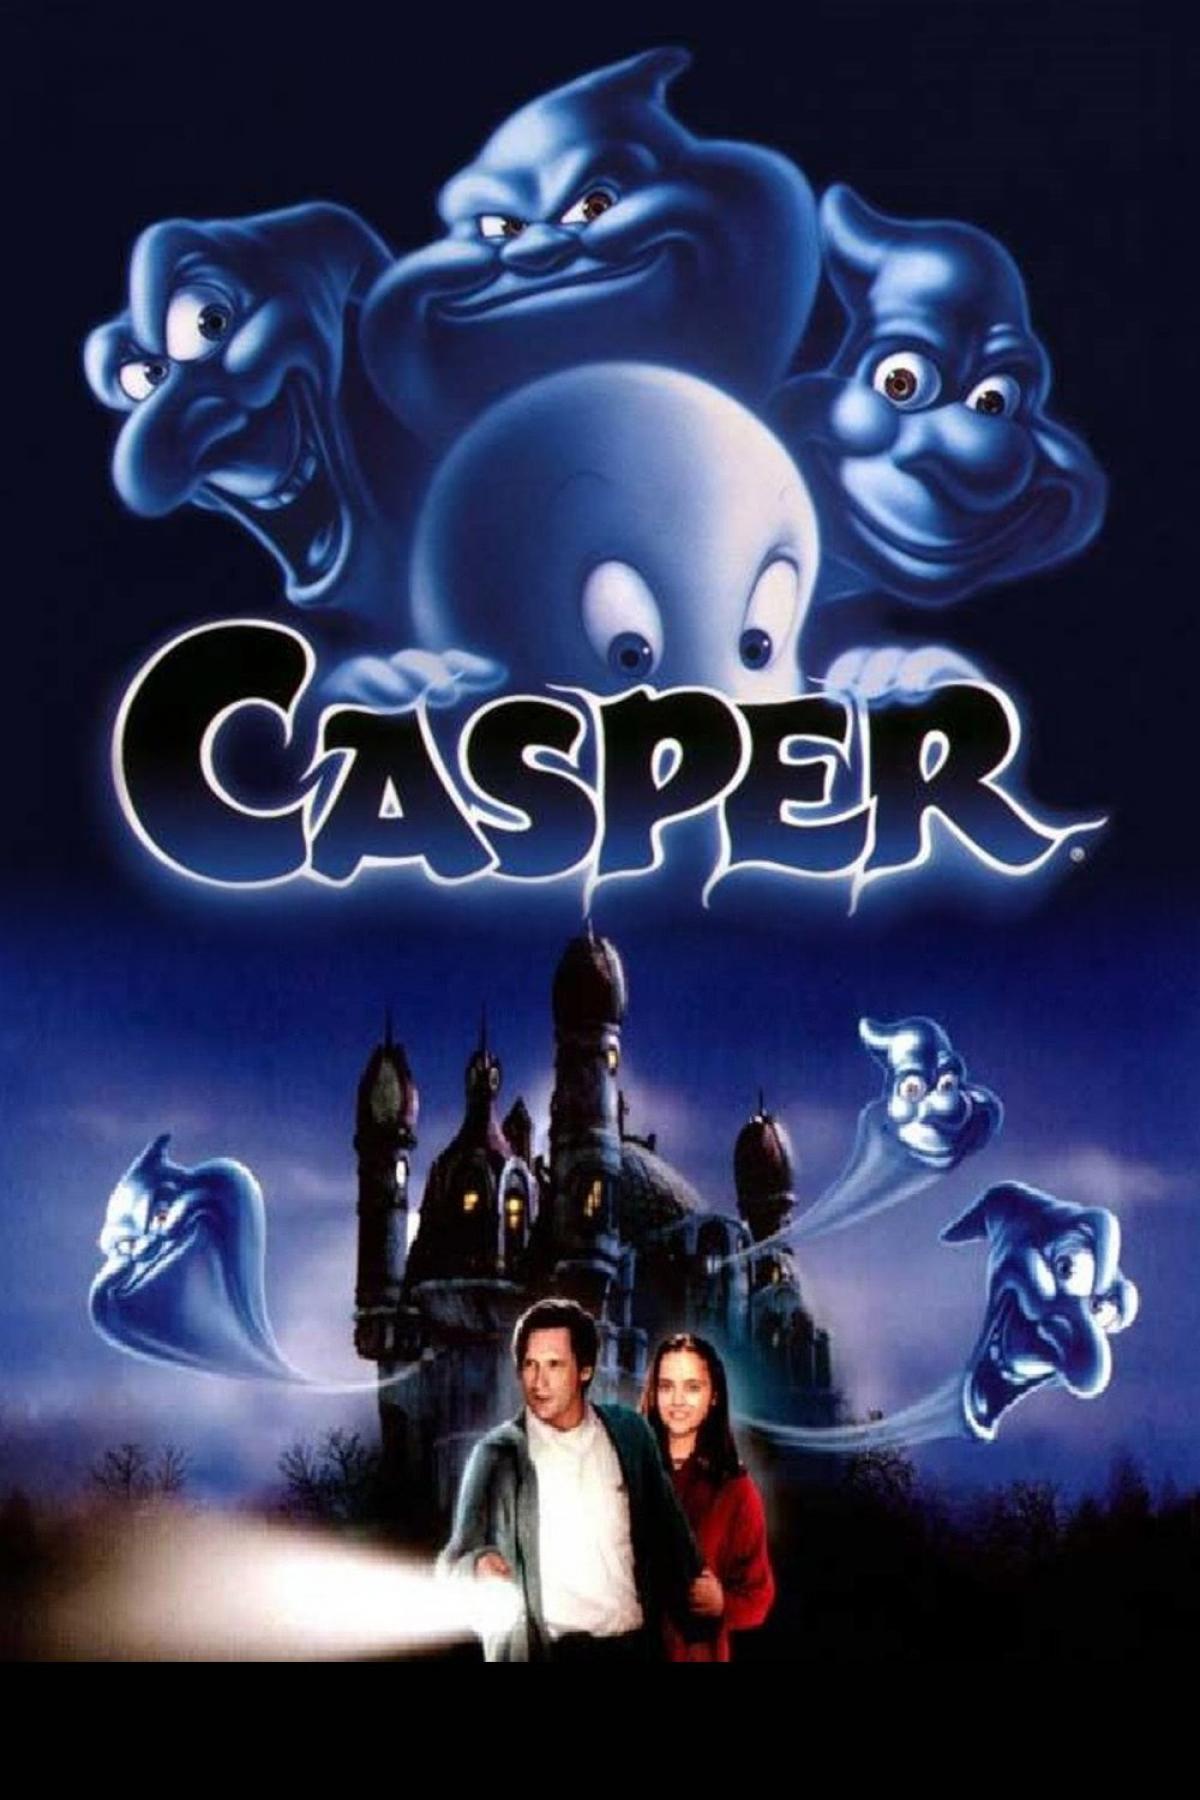 Casper - 1995